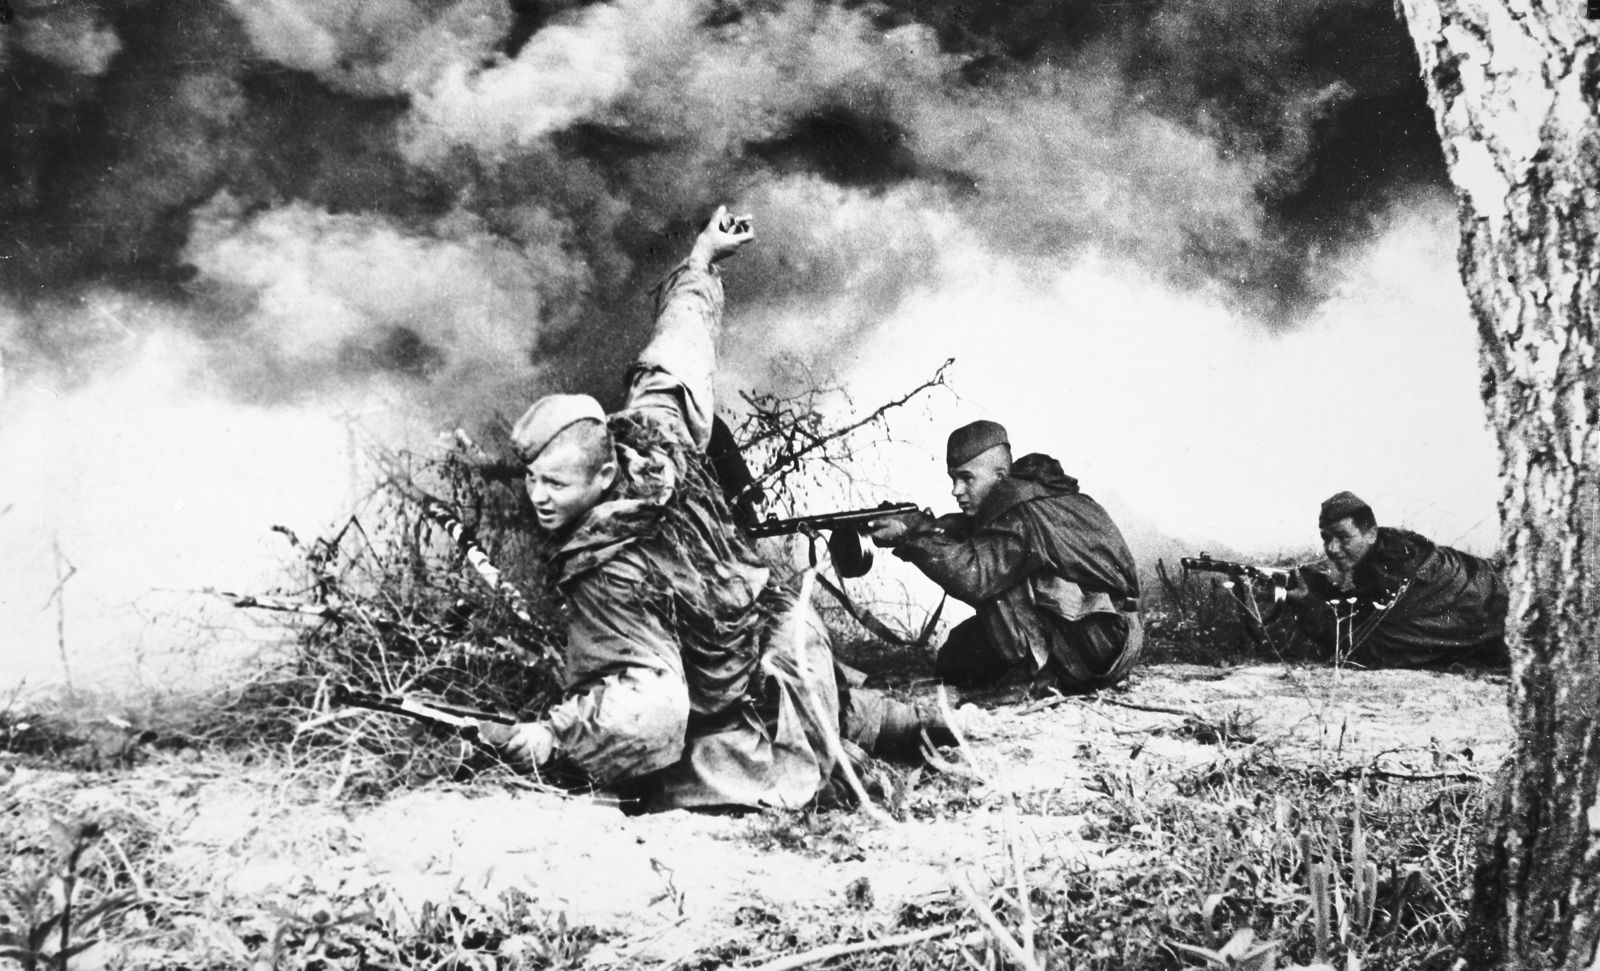 Сан войну. Бои в Великую отечественную войну 1941. Советский солдат в атаке второй мировой.